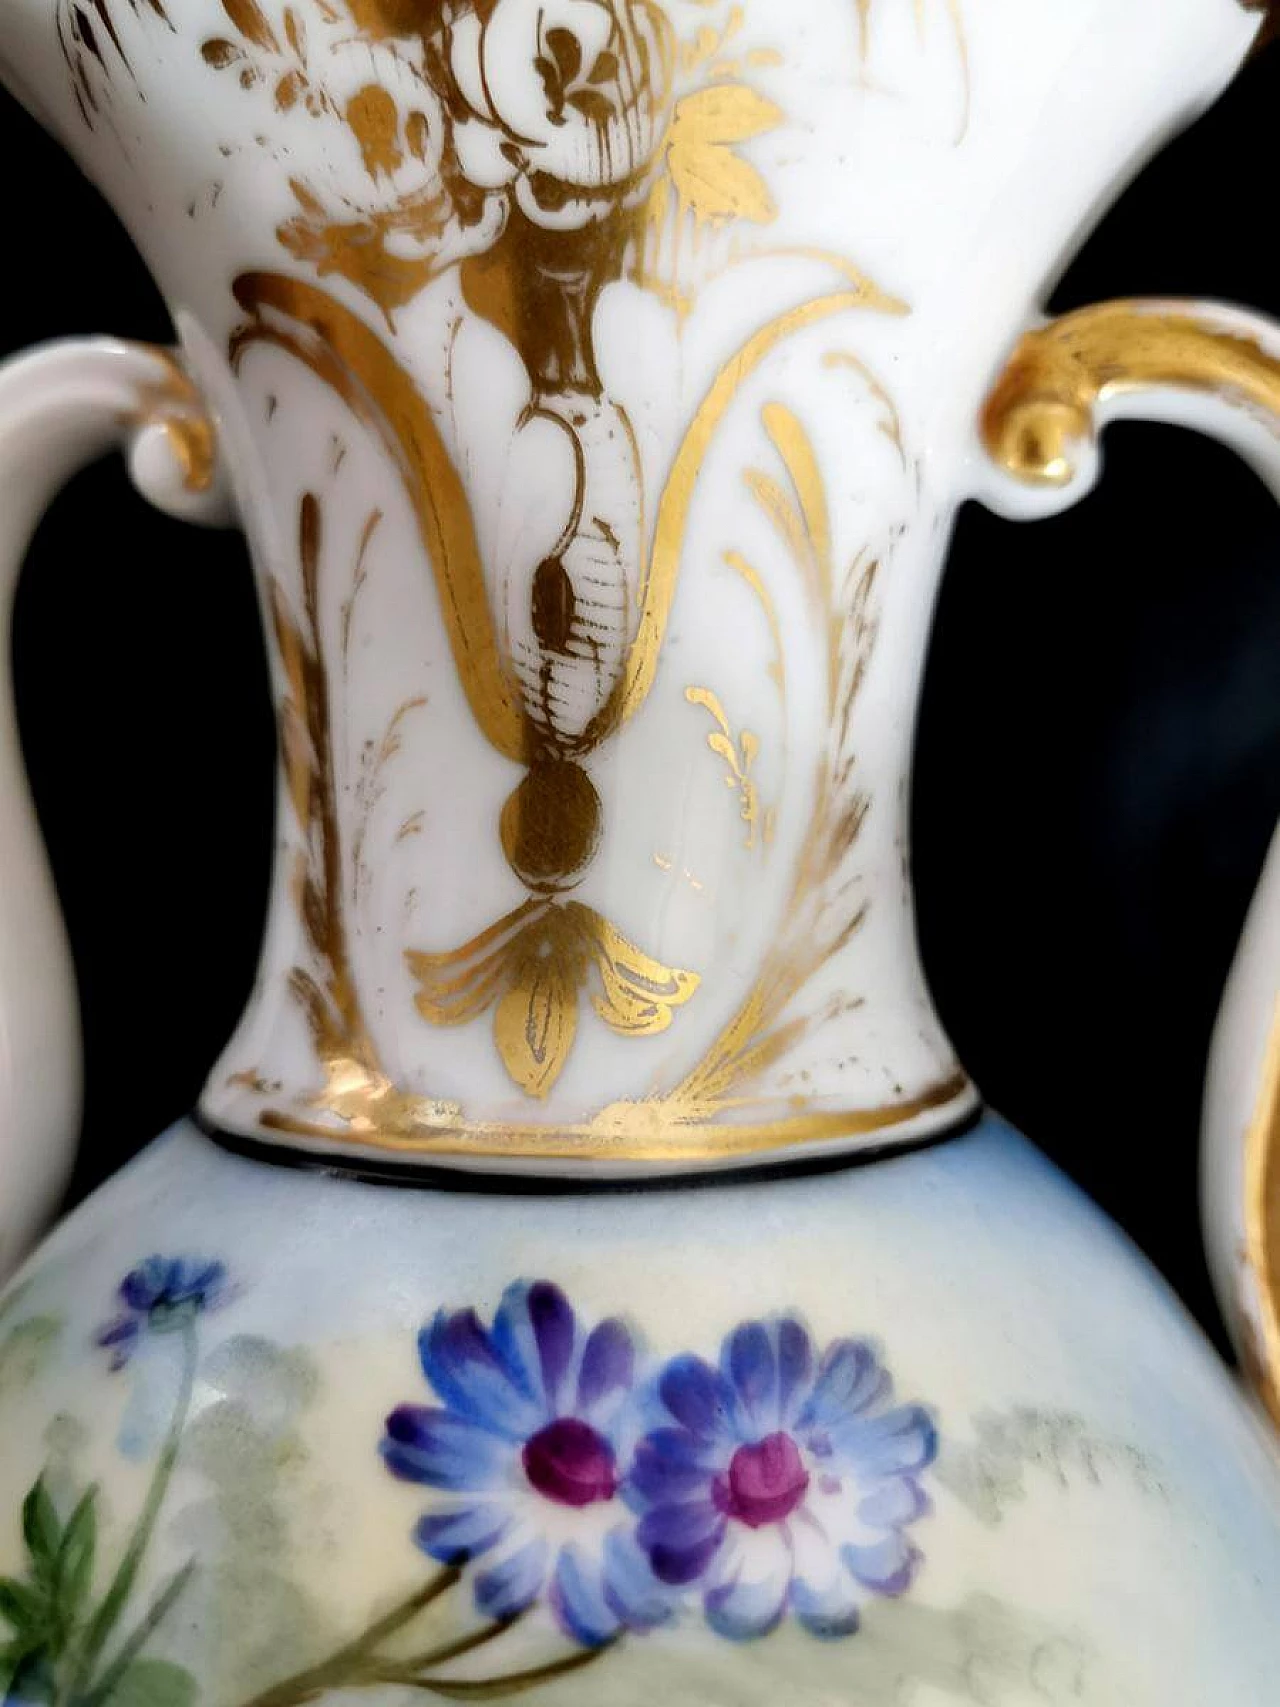 Pair of hand-painted De Paris porcelain vases, 19th century 1463942